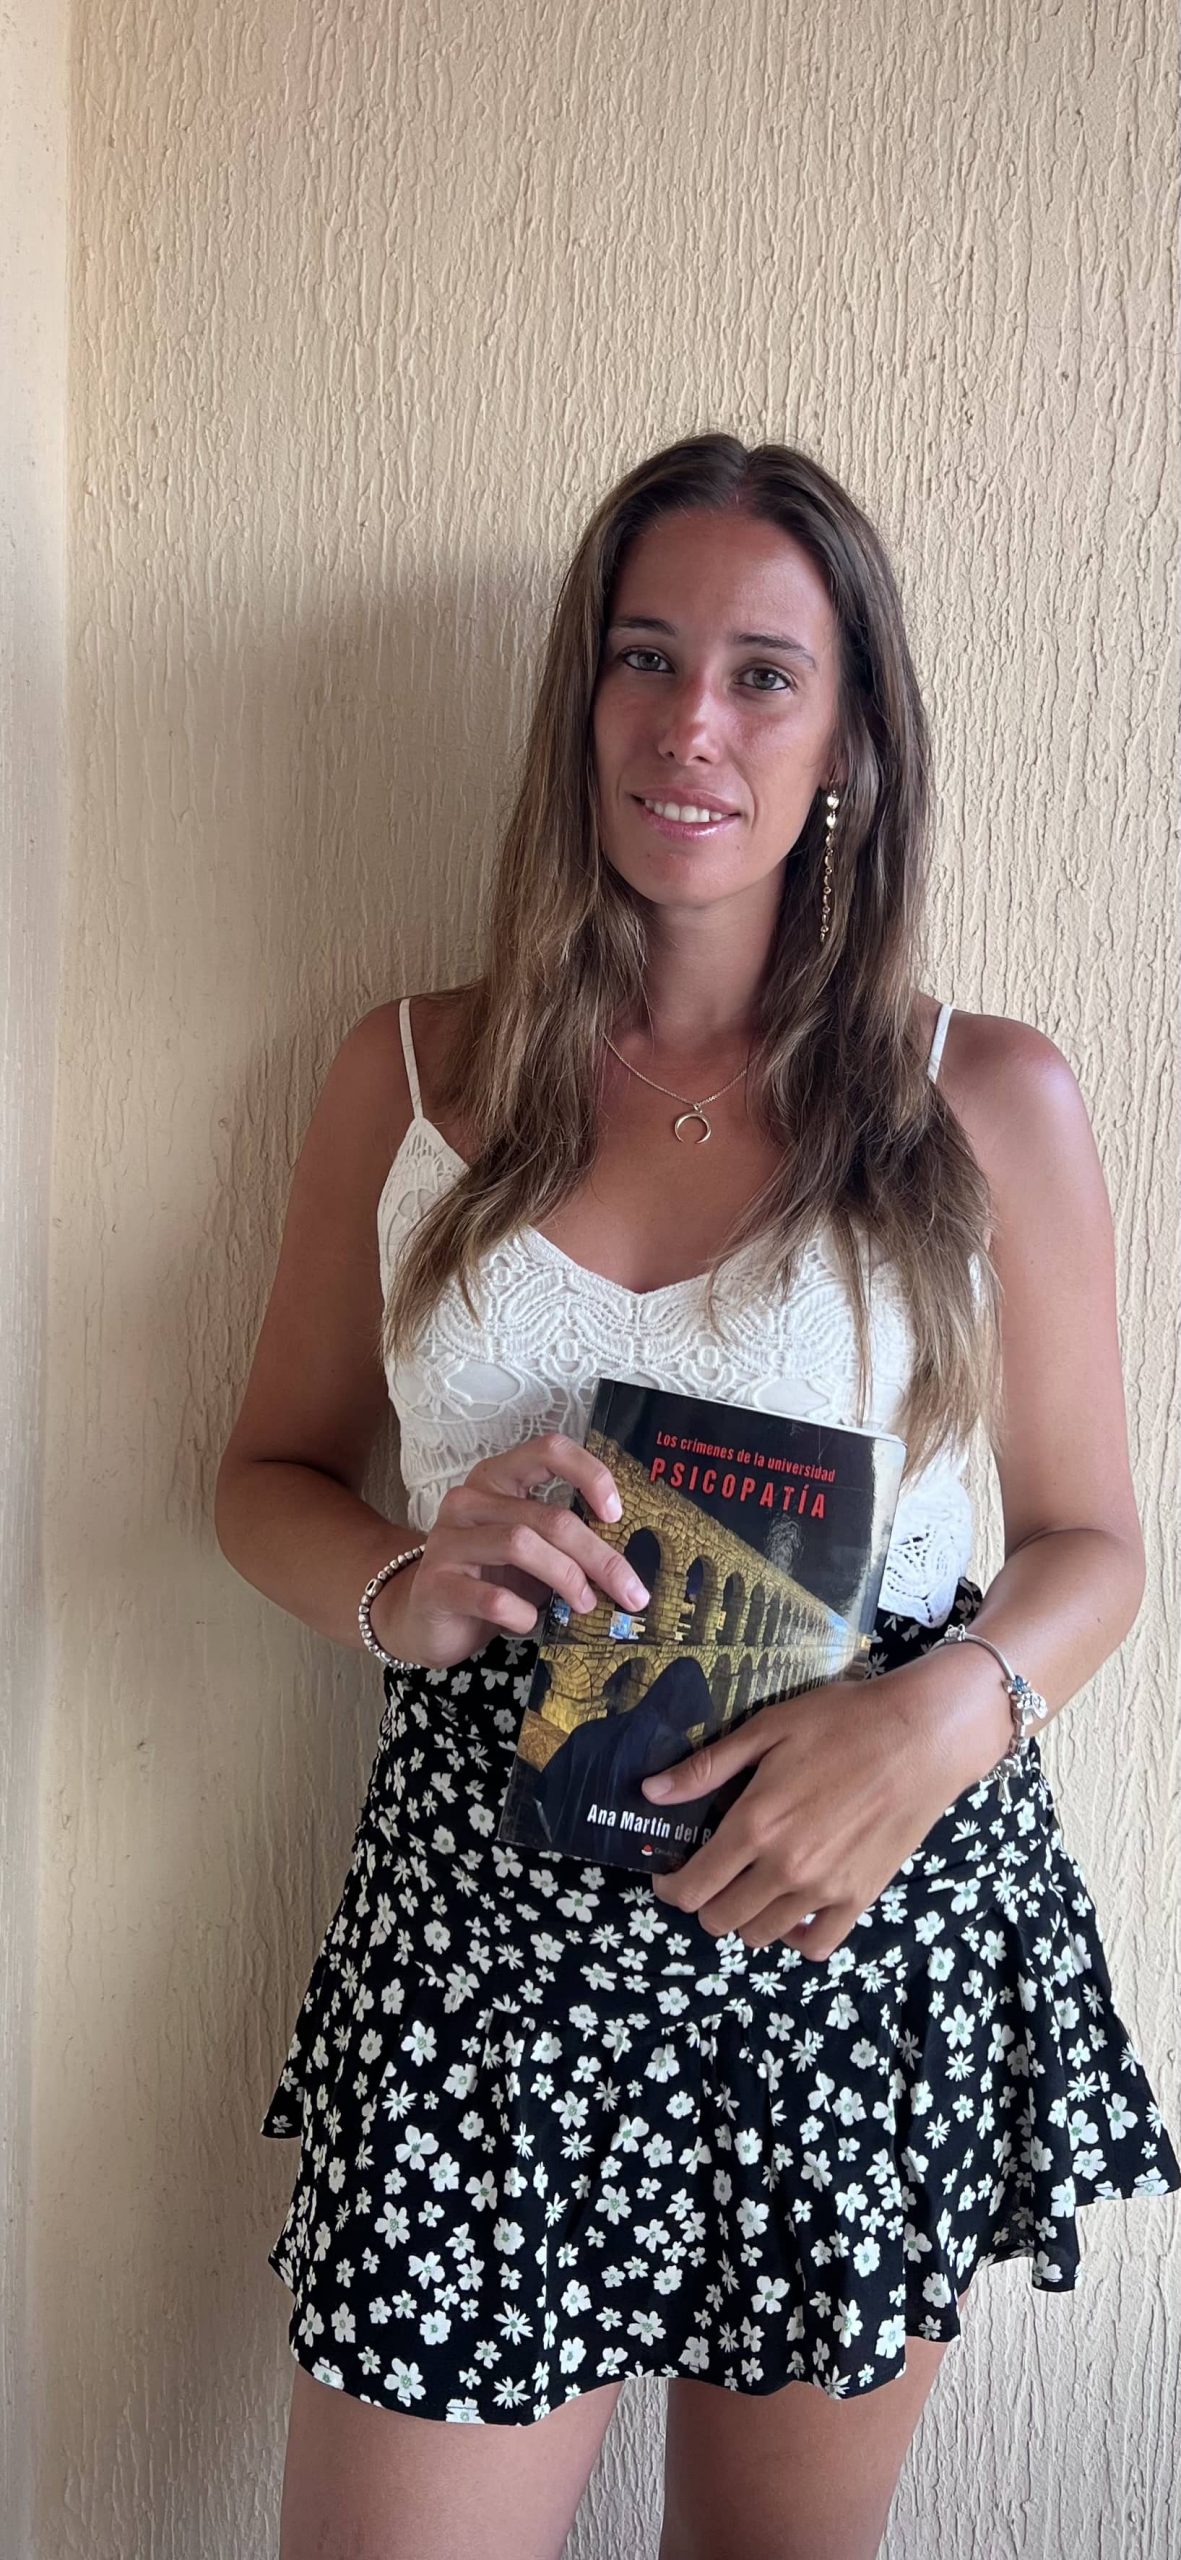 La escritora Ana Martín del Barrio, nos muestra su fabulosa obra “Los crímenes de la Universidad: Psicopatía”